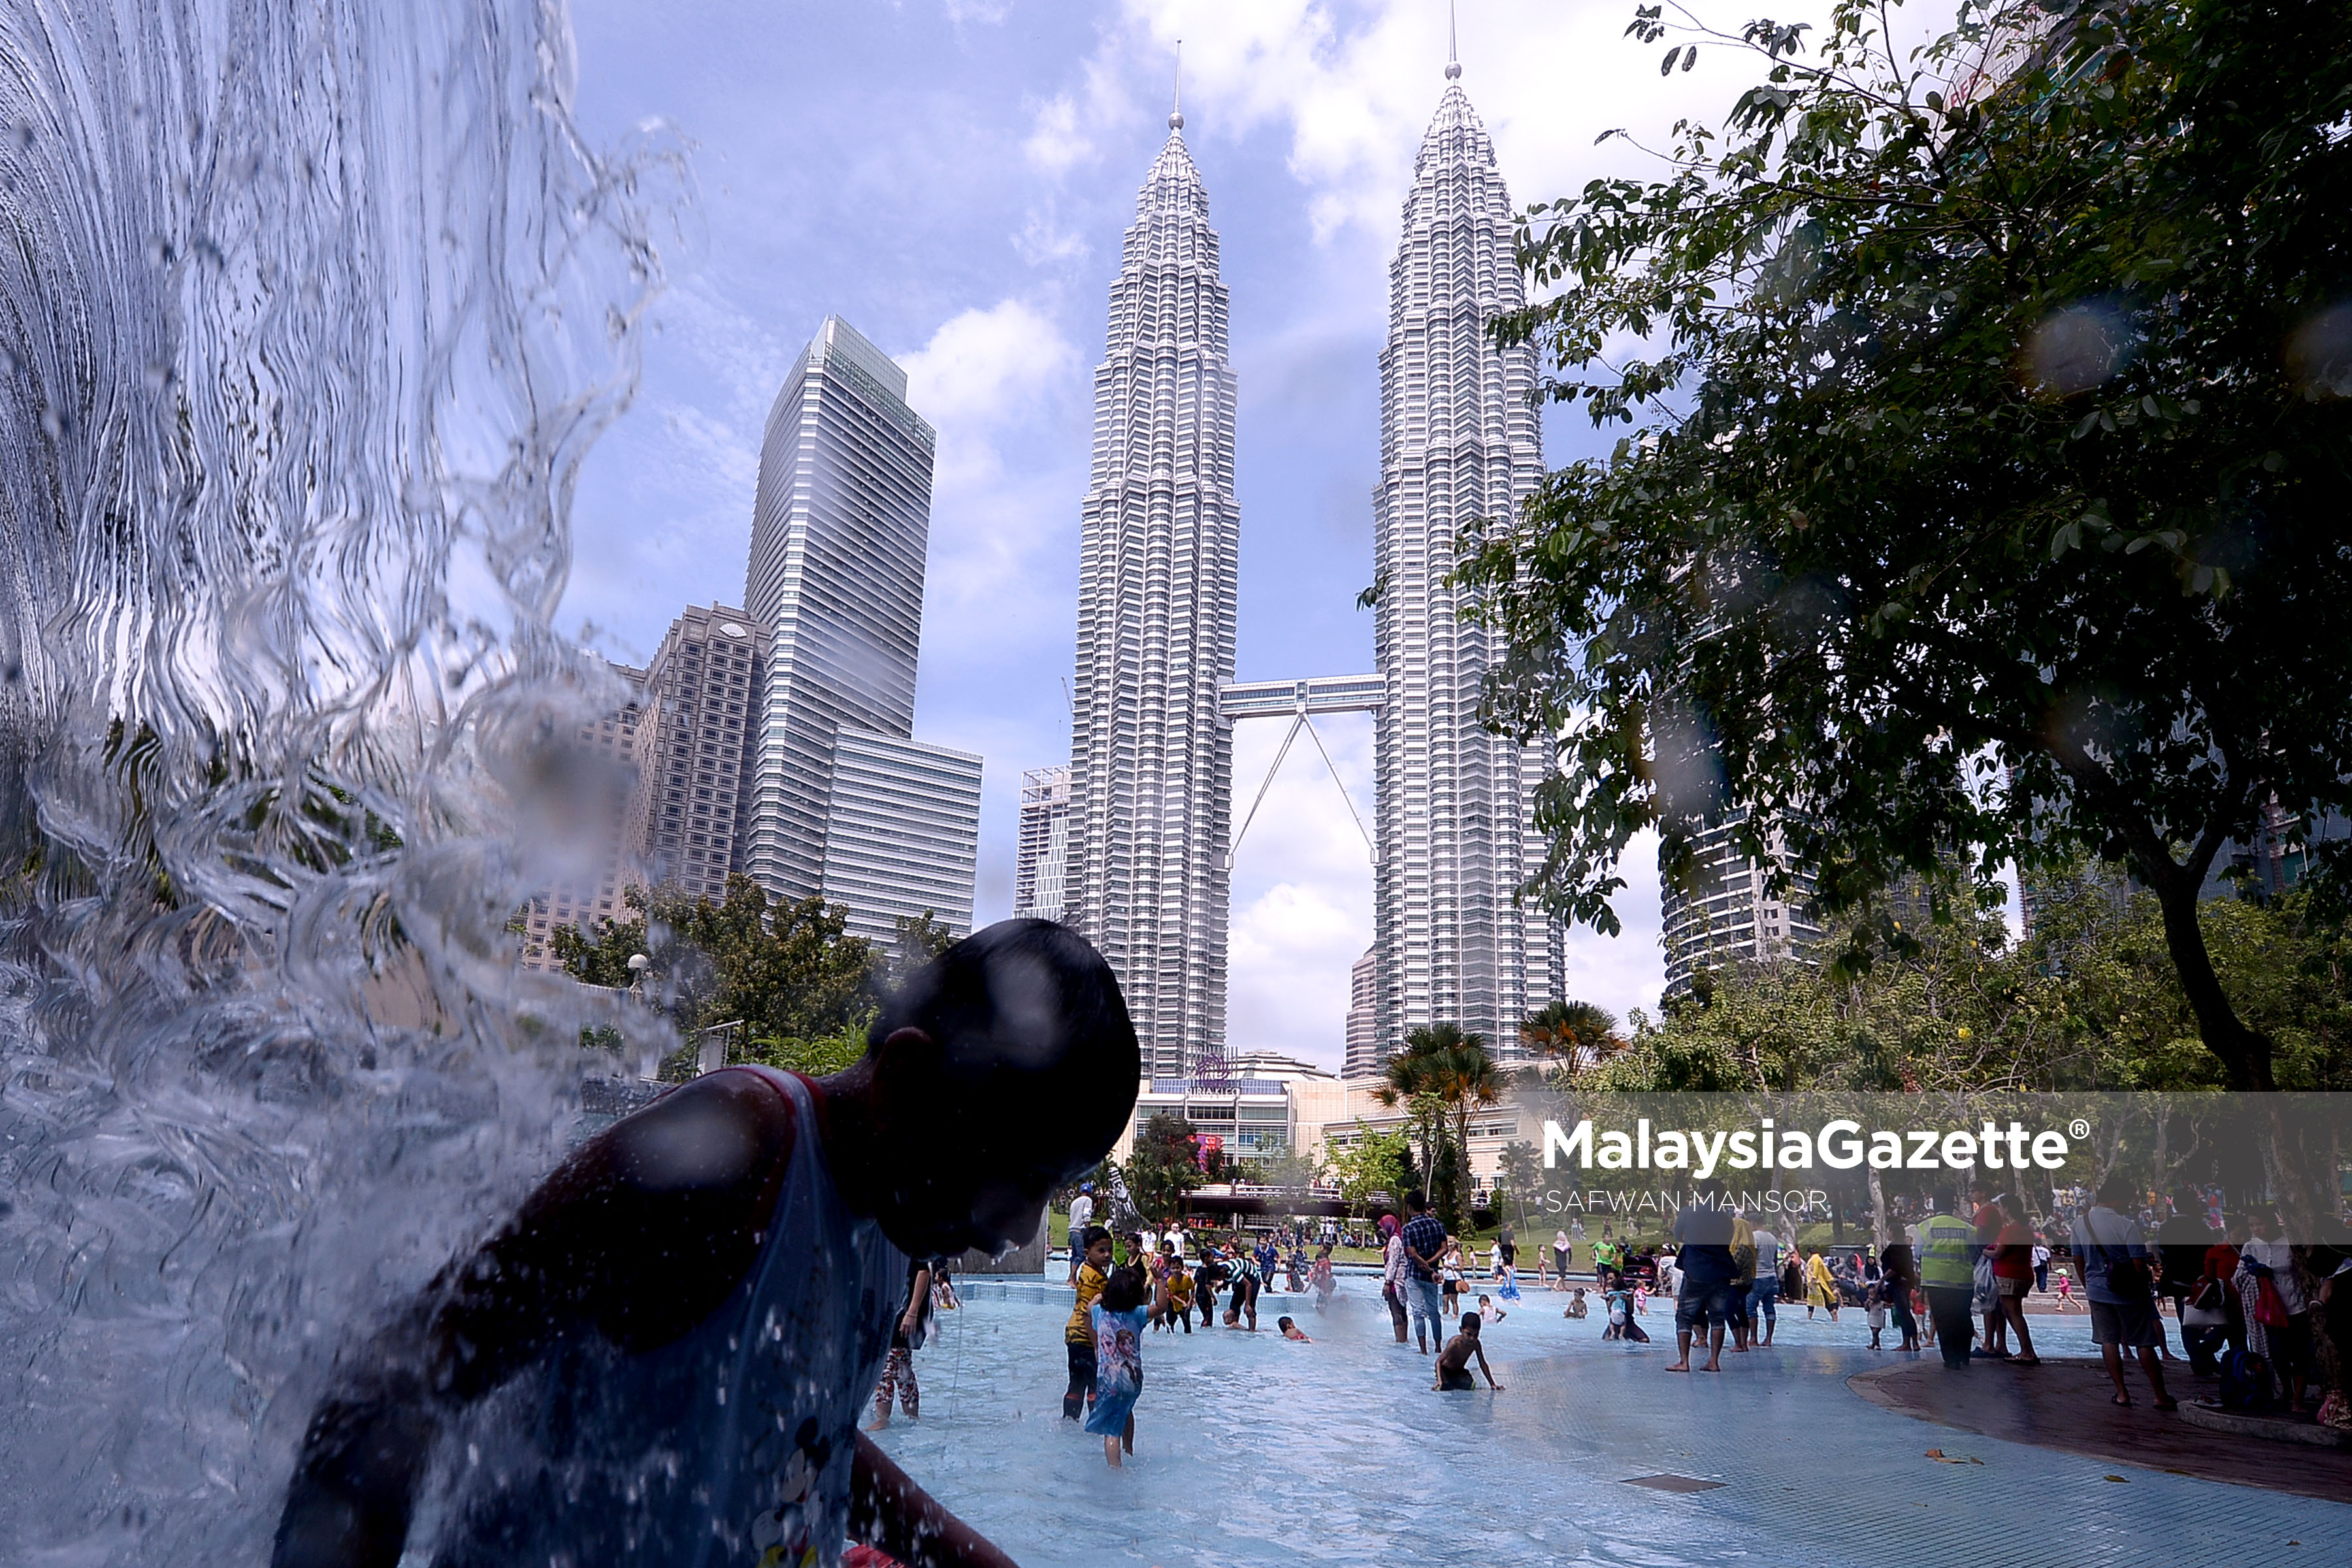 Berlatar belakang Menara Berkembar KLCC, gelagat seorang kanak-kanak mandi dibawah pancuran air ketika tinjauan lensa Malaysia Gazettte sempena cuti Tahun Baru Cina di Taman Rekreasi KLCC, Kuala Lumpur. foto SAFWAN MANSOR, 29 JANUARI 2017